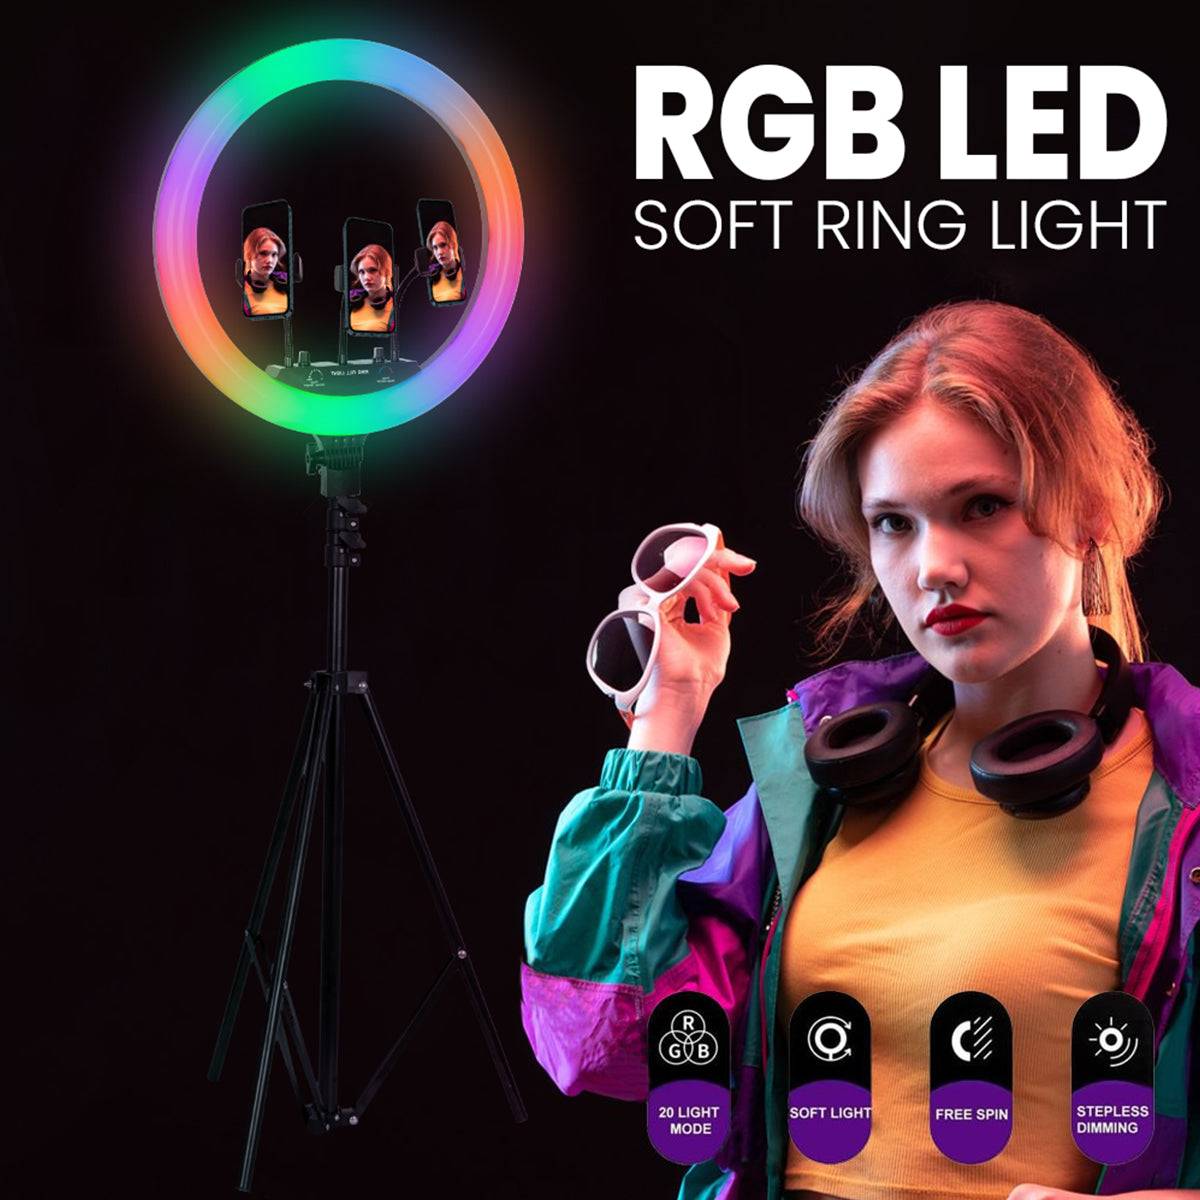 GloboStar® 75805 Professional Digital Ring Light Φ46cm LED SMD 70W 7000lm 180° AC 230V με Καλώδιο Τροφοδοσίας Πρίζας - Ασύρματο Χειριστήριο RF 2.4Ghz Εναλλαγής Χρωμάτων & 3 Βάσεις Τηλεφώνου - Πολύχρωμο RGBW+WW Dimmable - ledmania.gr